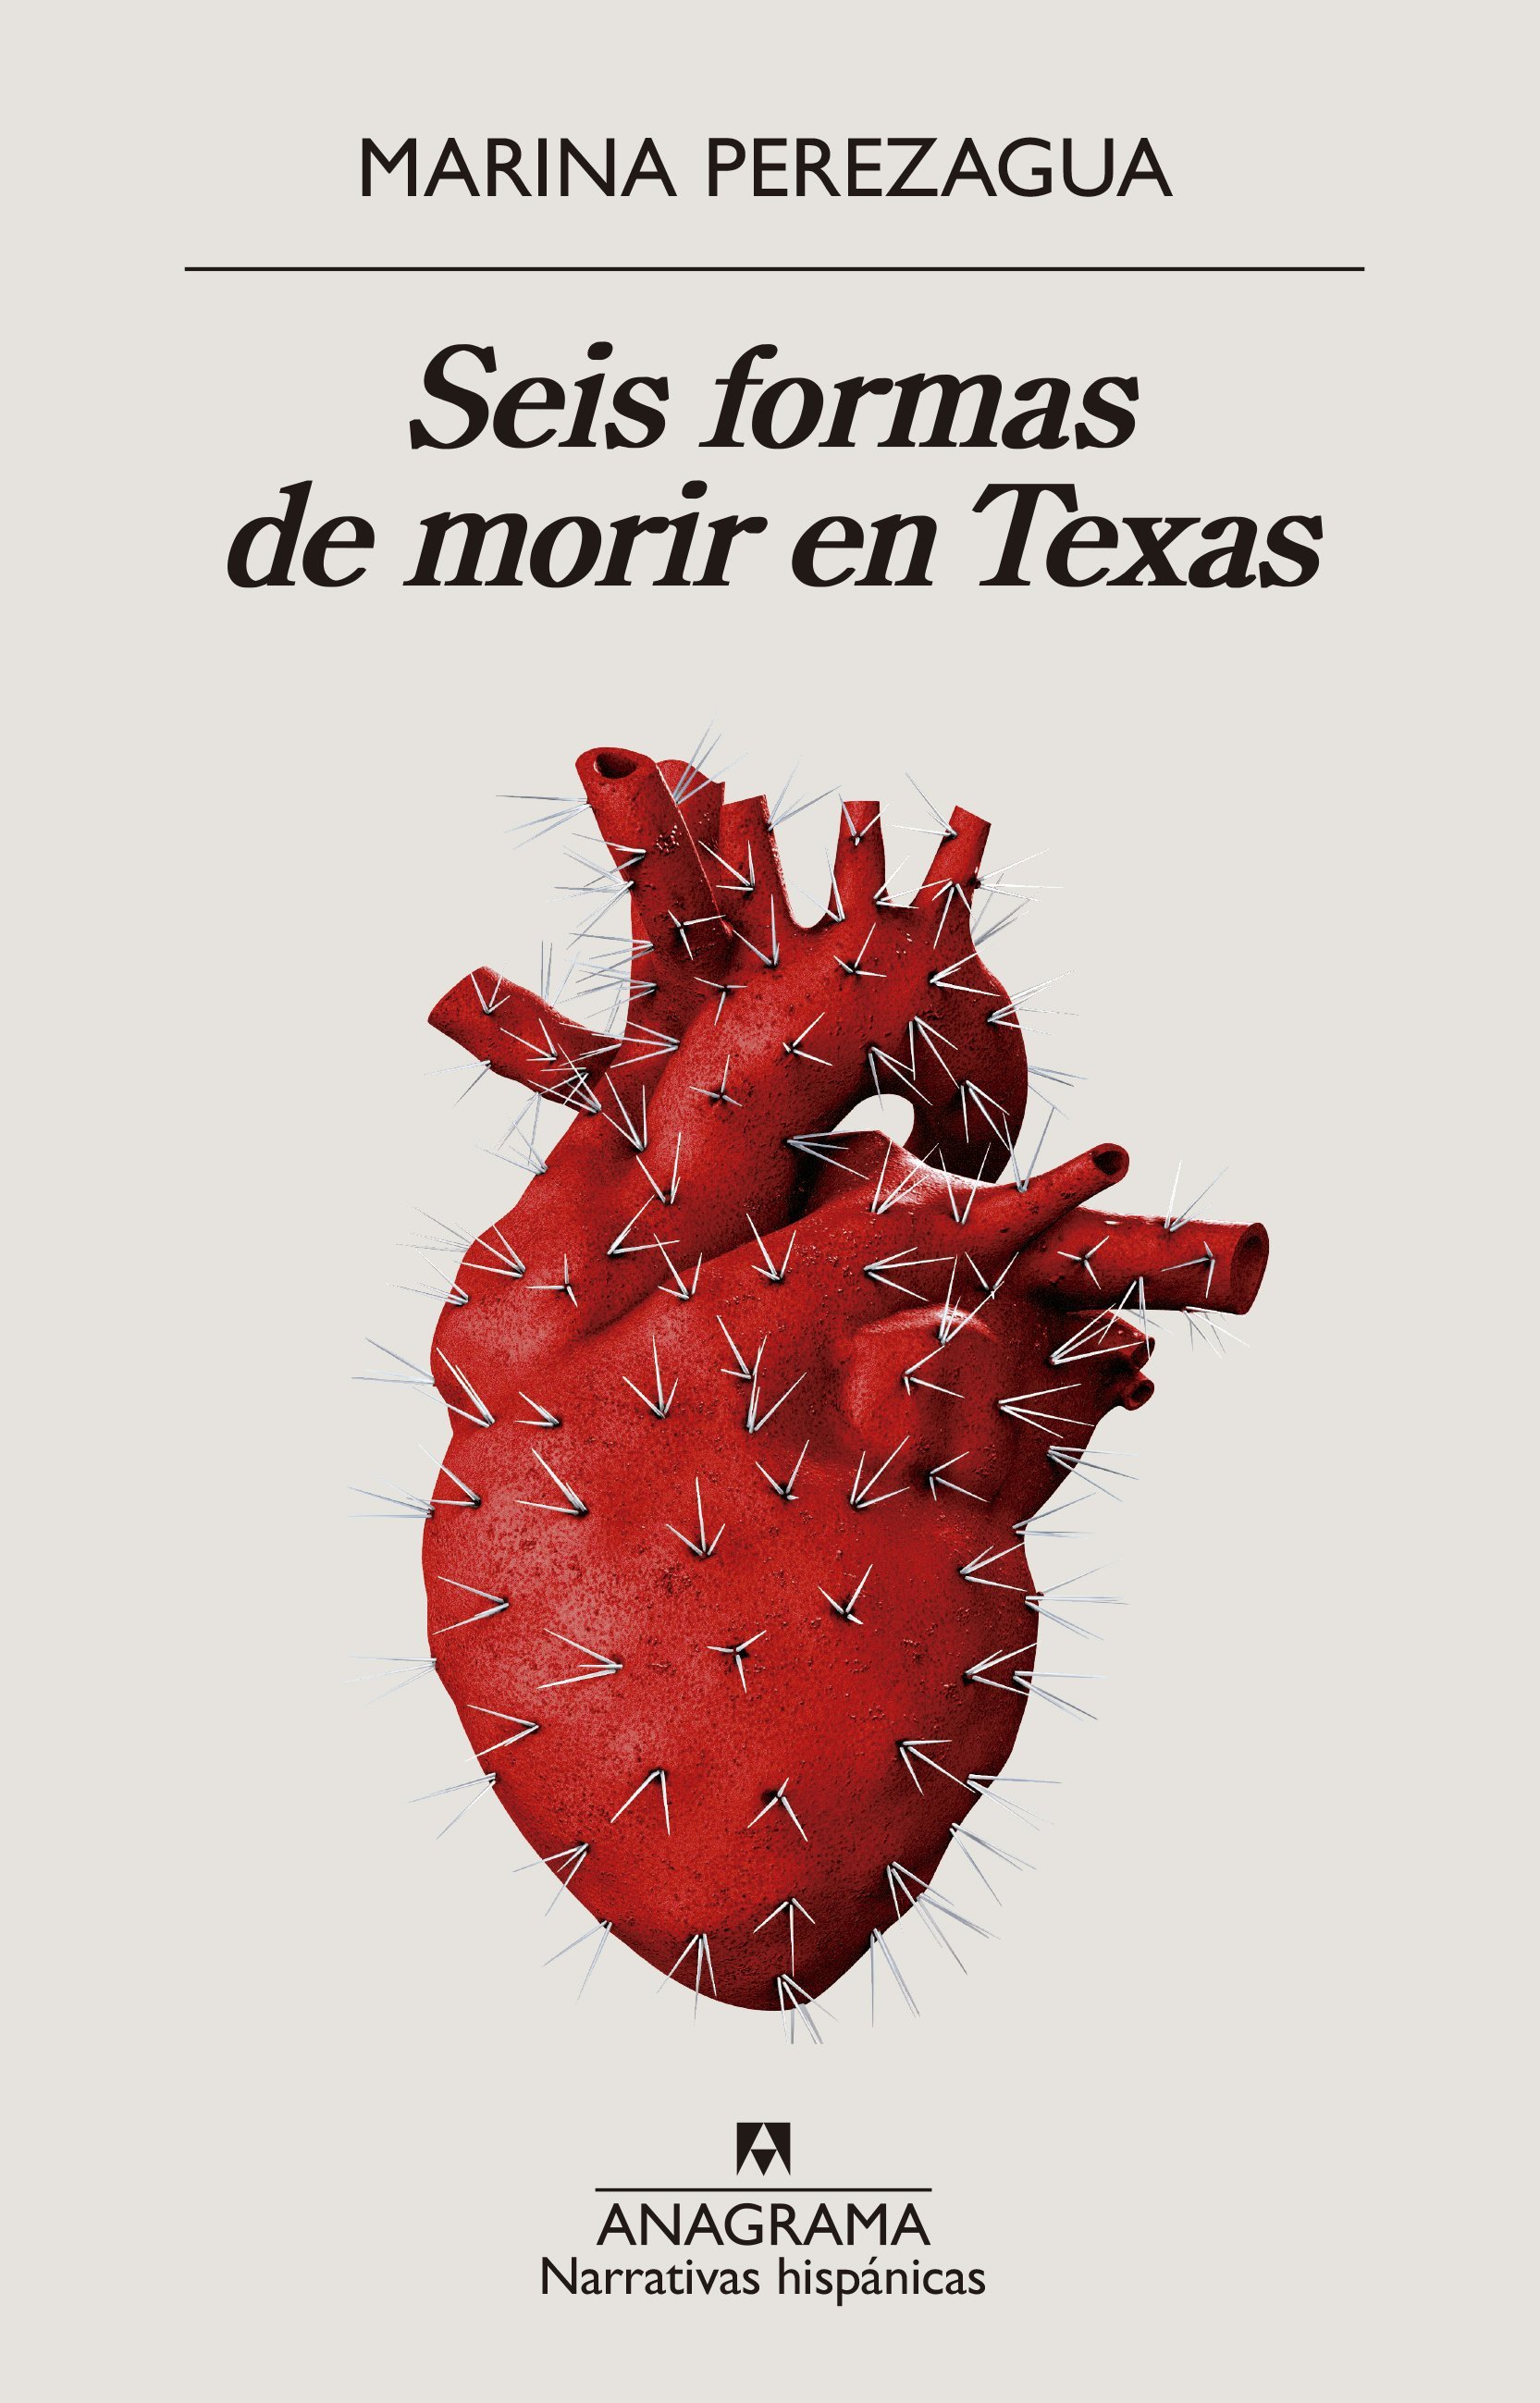 Marina Perezagua: Seis formas de morir en Texas